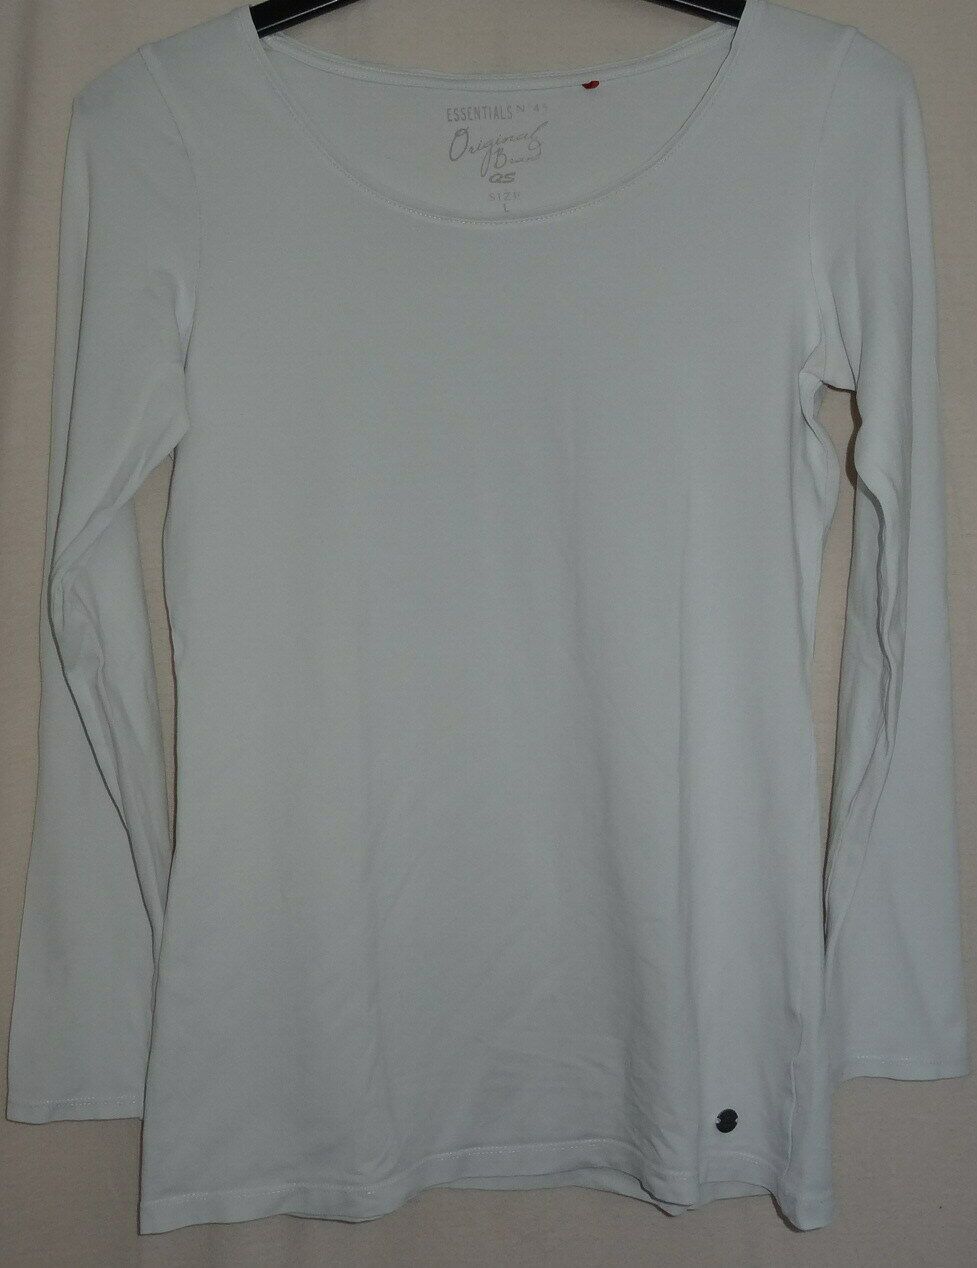 KA QS Essentials N 45 Original Brand T-Shirt Gr.L Baumwolle Elasthan wenig getragen gut erhalten